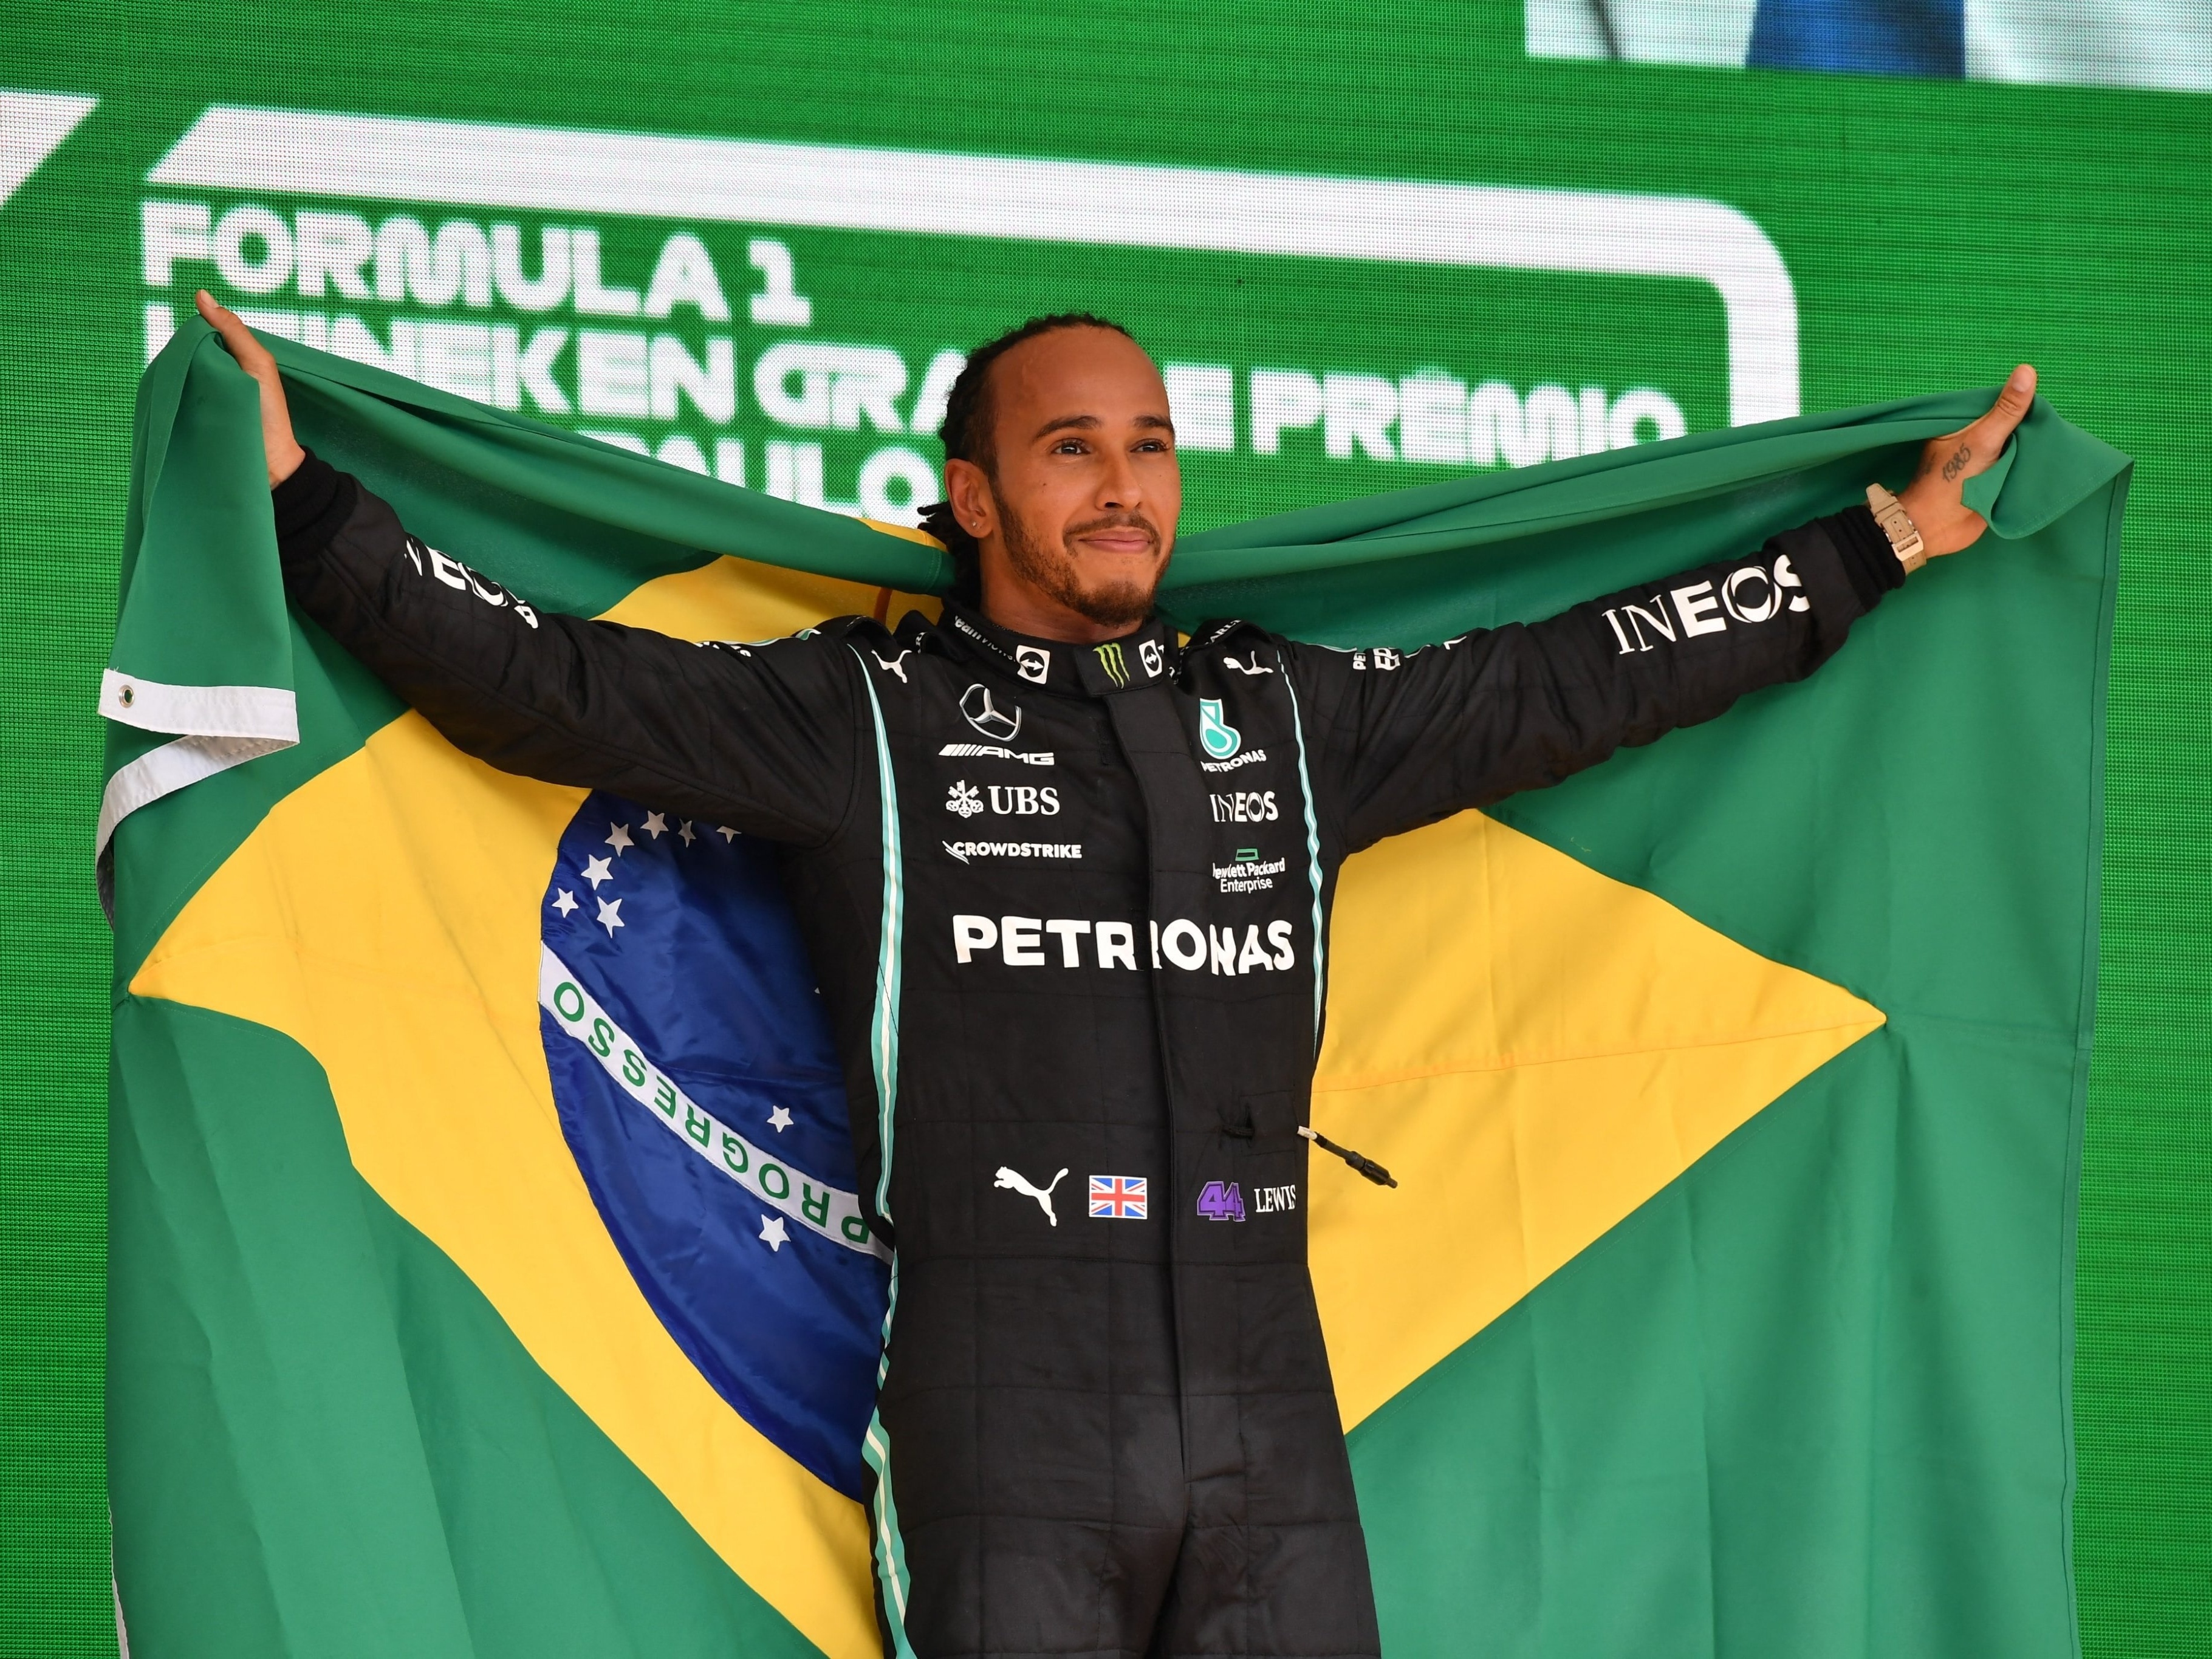 Formula 1 Grande Prêmio do Brasil, Logopedia